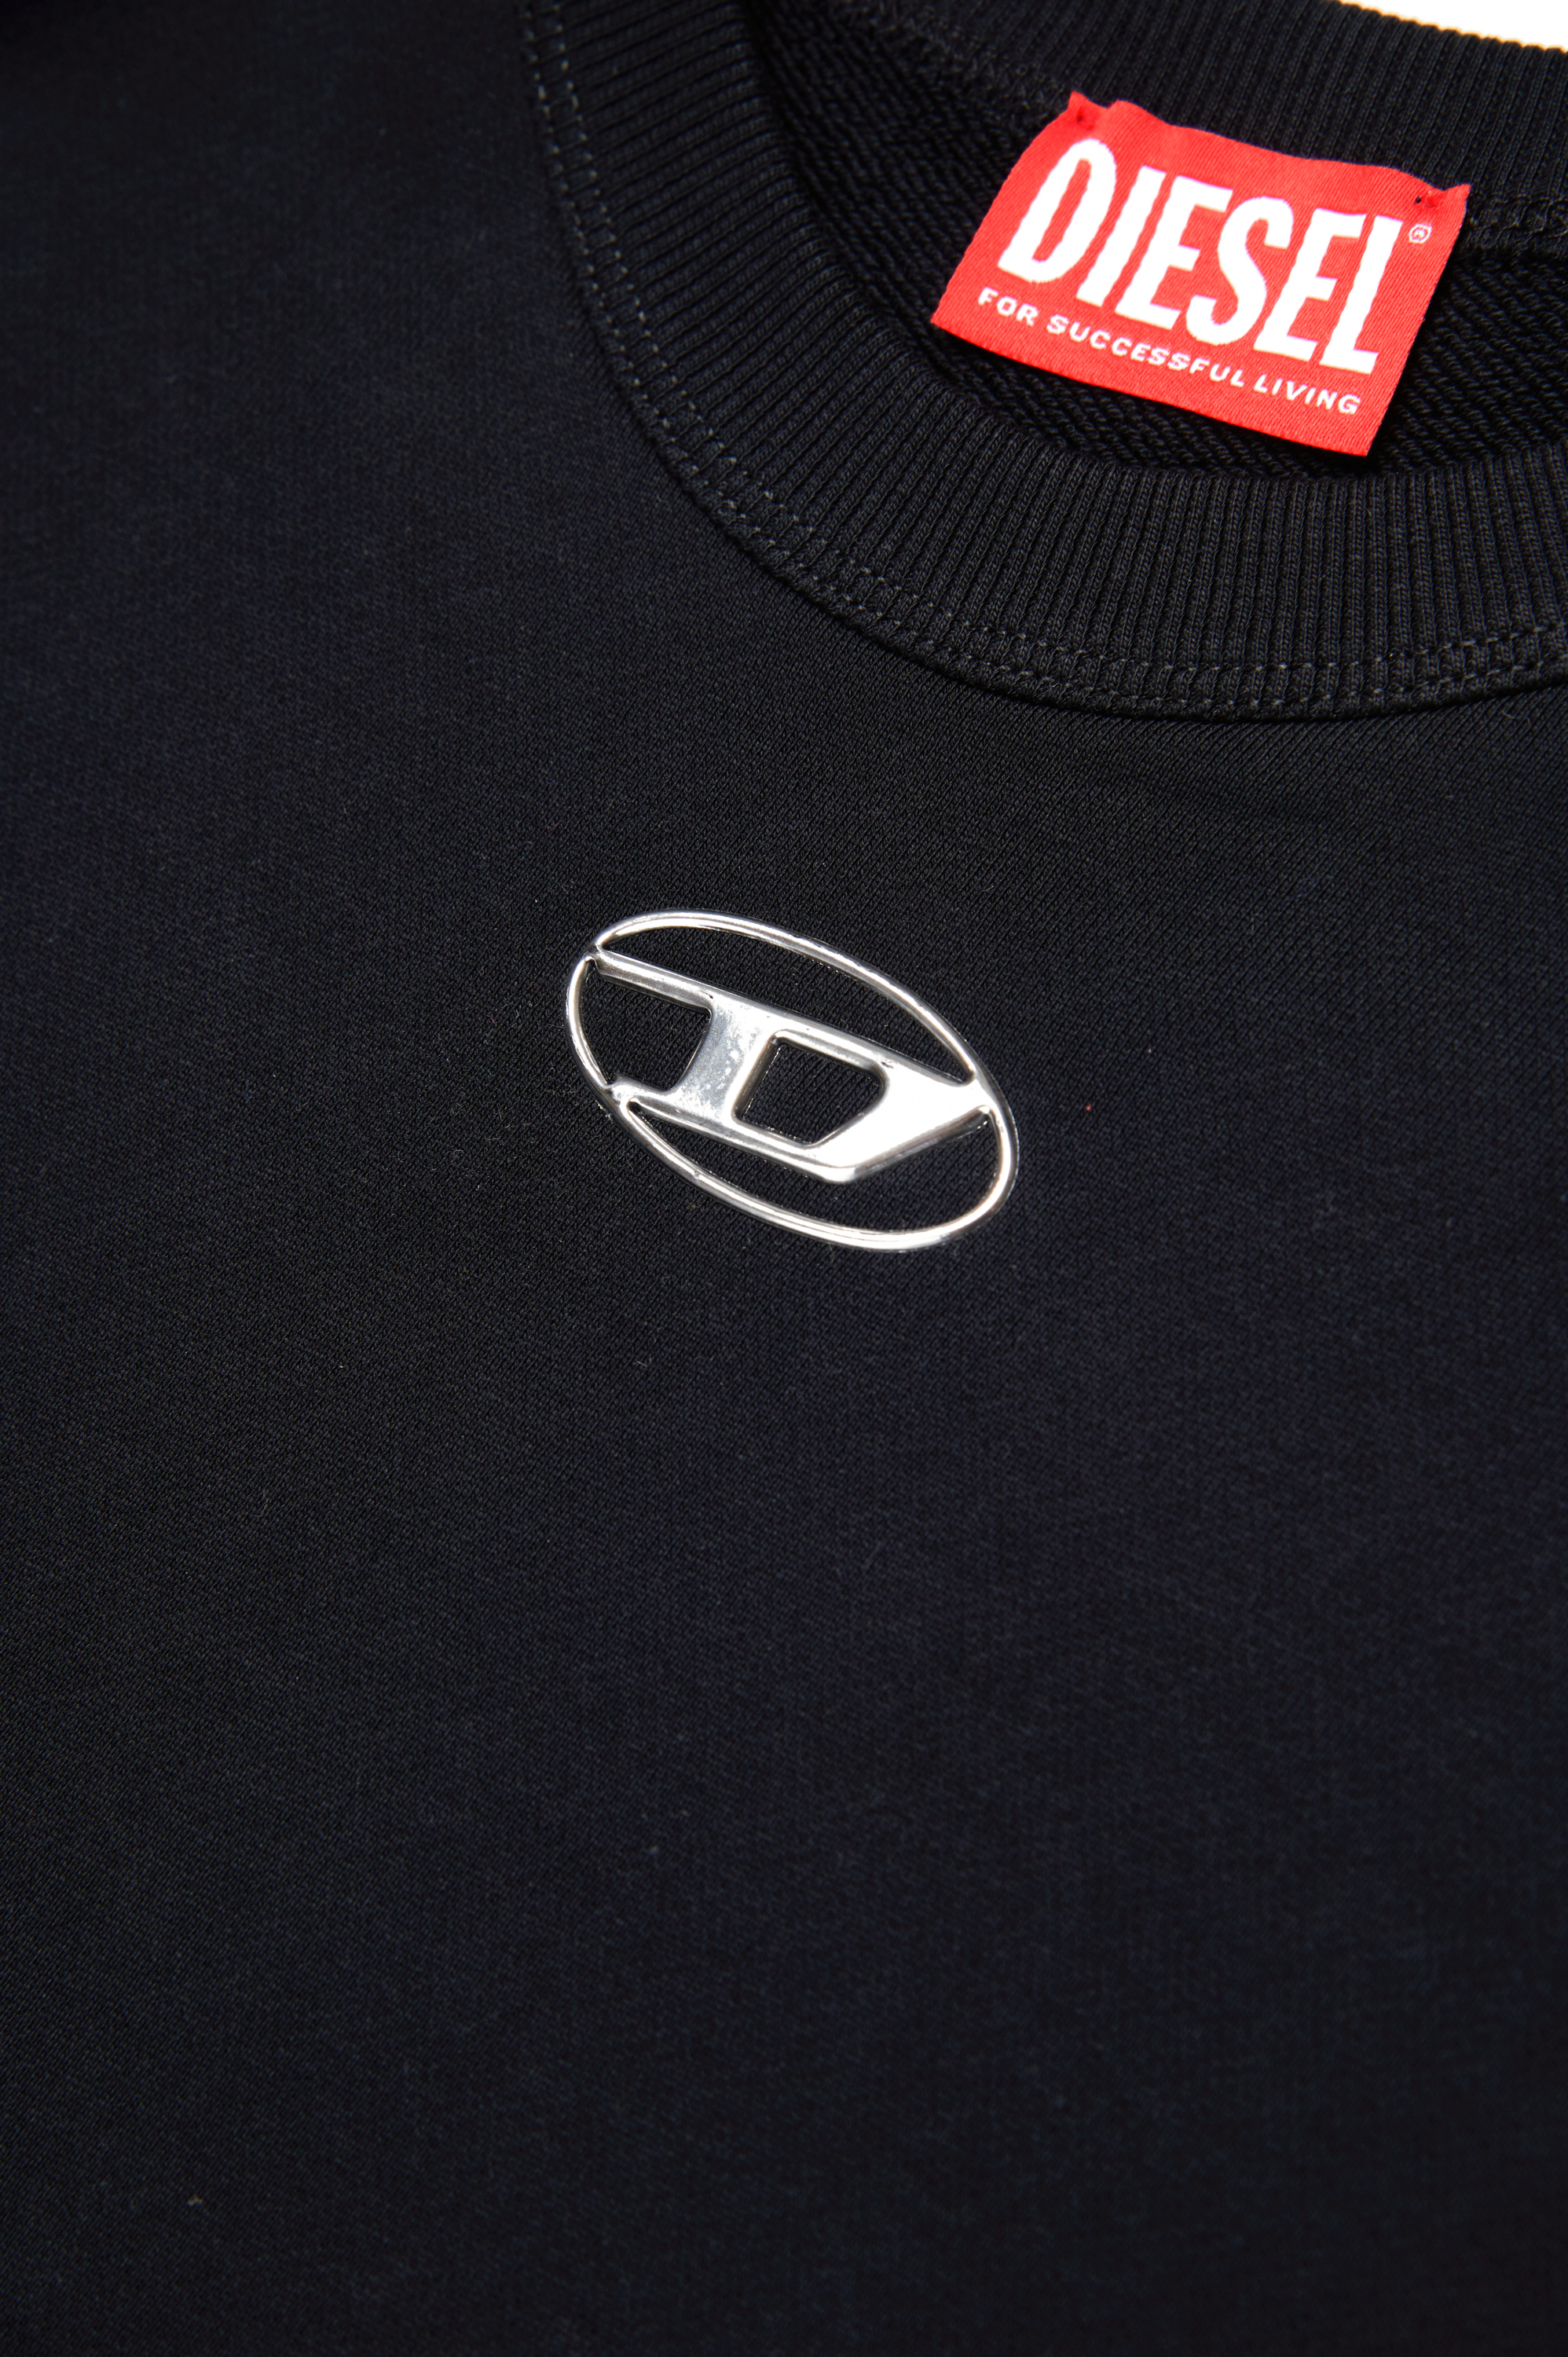 Diesel - SMACSISOD OVER, Man Sweatshirt with metal-look Oval D logo in Black - Image 4